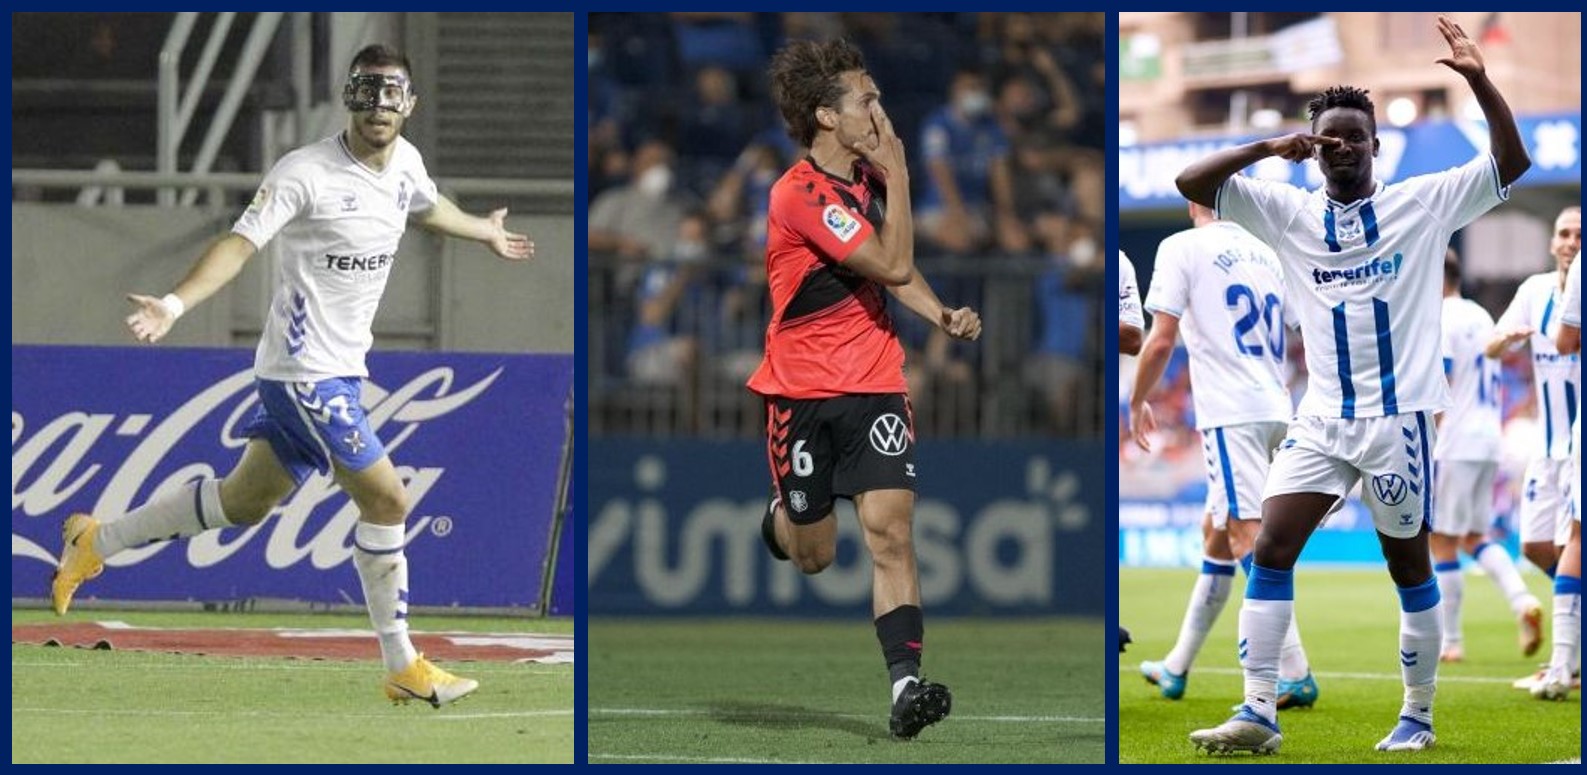 Tercer estreno liguero seguido del CDT con gol de un debutante: Jacobo, Corredera y Dauda